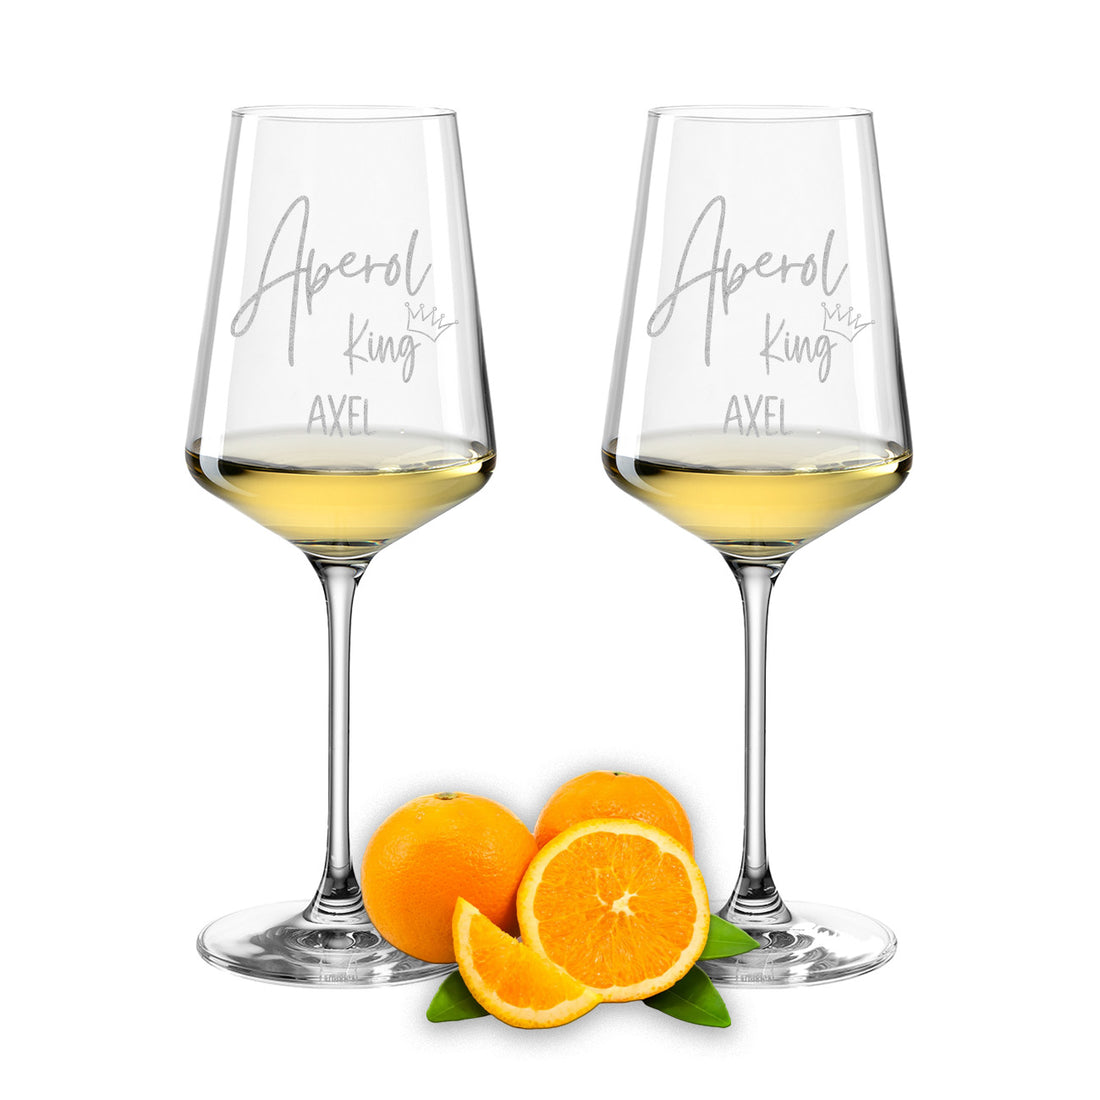 Weinglas mit Gravur Leonardo Puccini "APEROL KING" 2 Gläser mit Wunschname